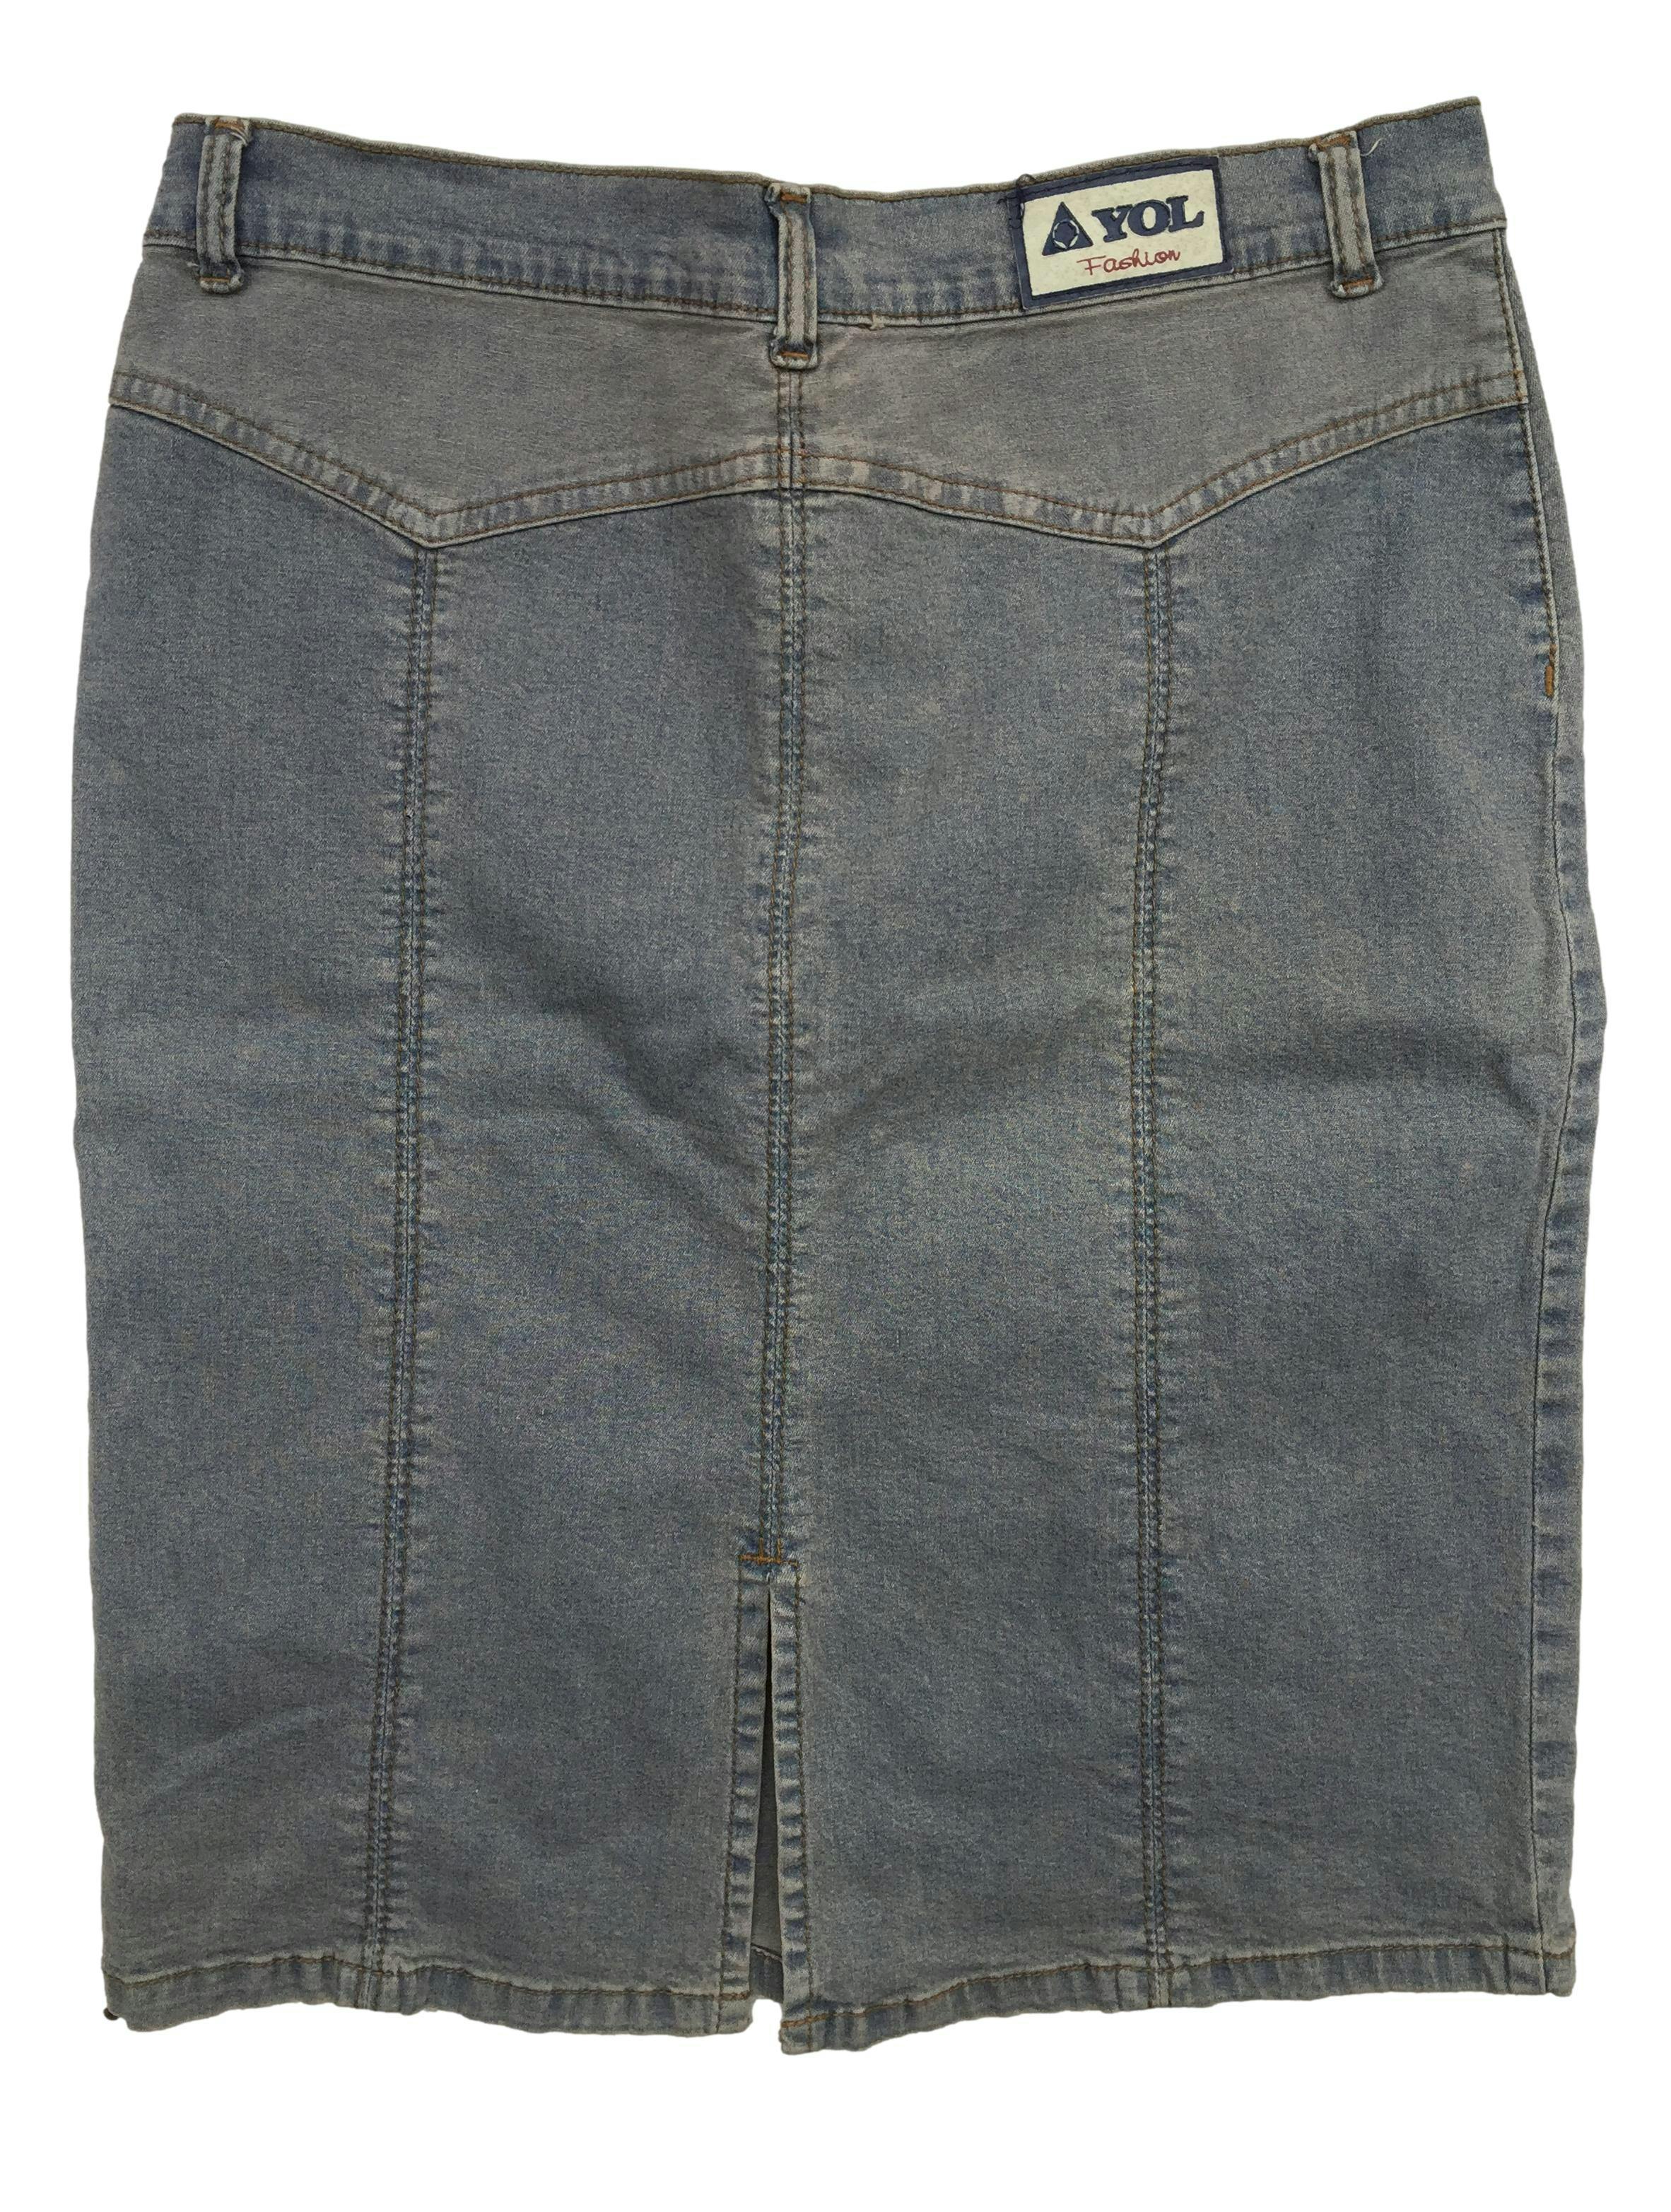 Falda jean, efecto lavado, aberturas laterale, cierre y botón delantero. Cintura: 74cm, Largo: 54cm